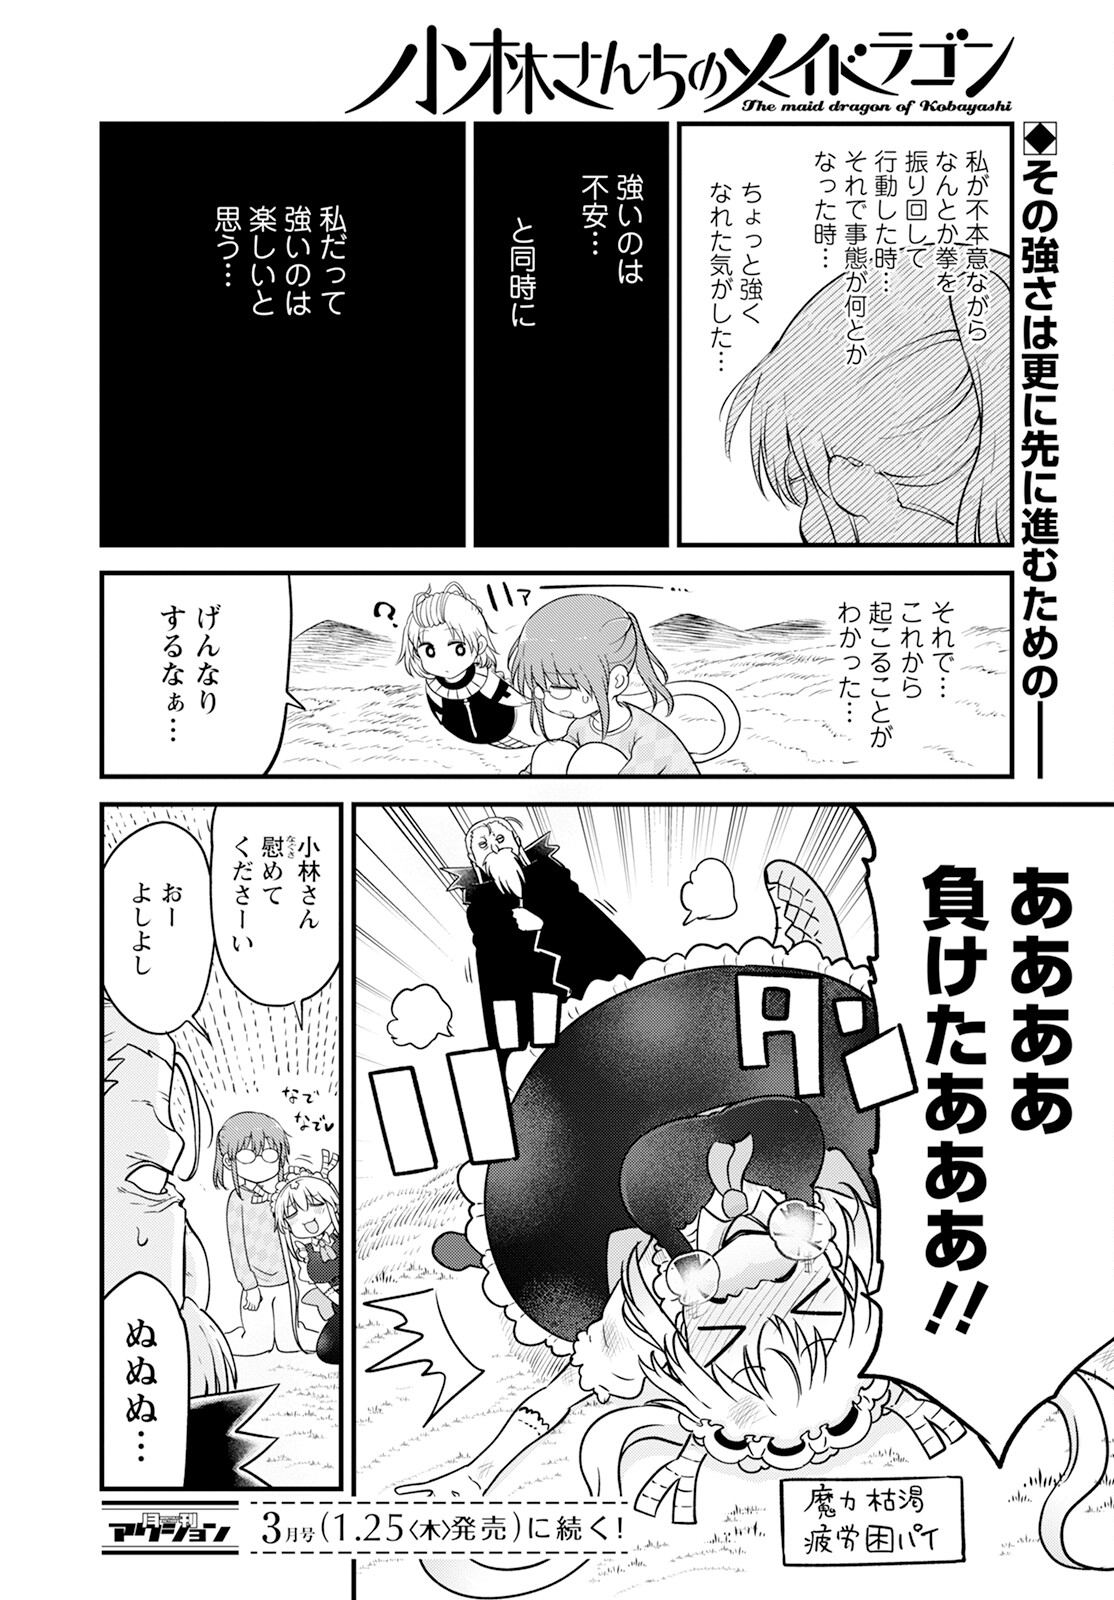 Kobayashi-san Chi no Maid Dragon - Chapter 139 - Page 14